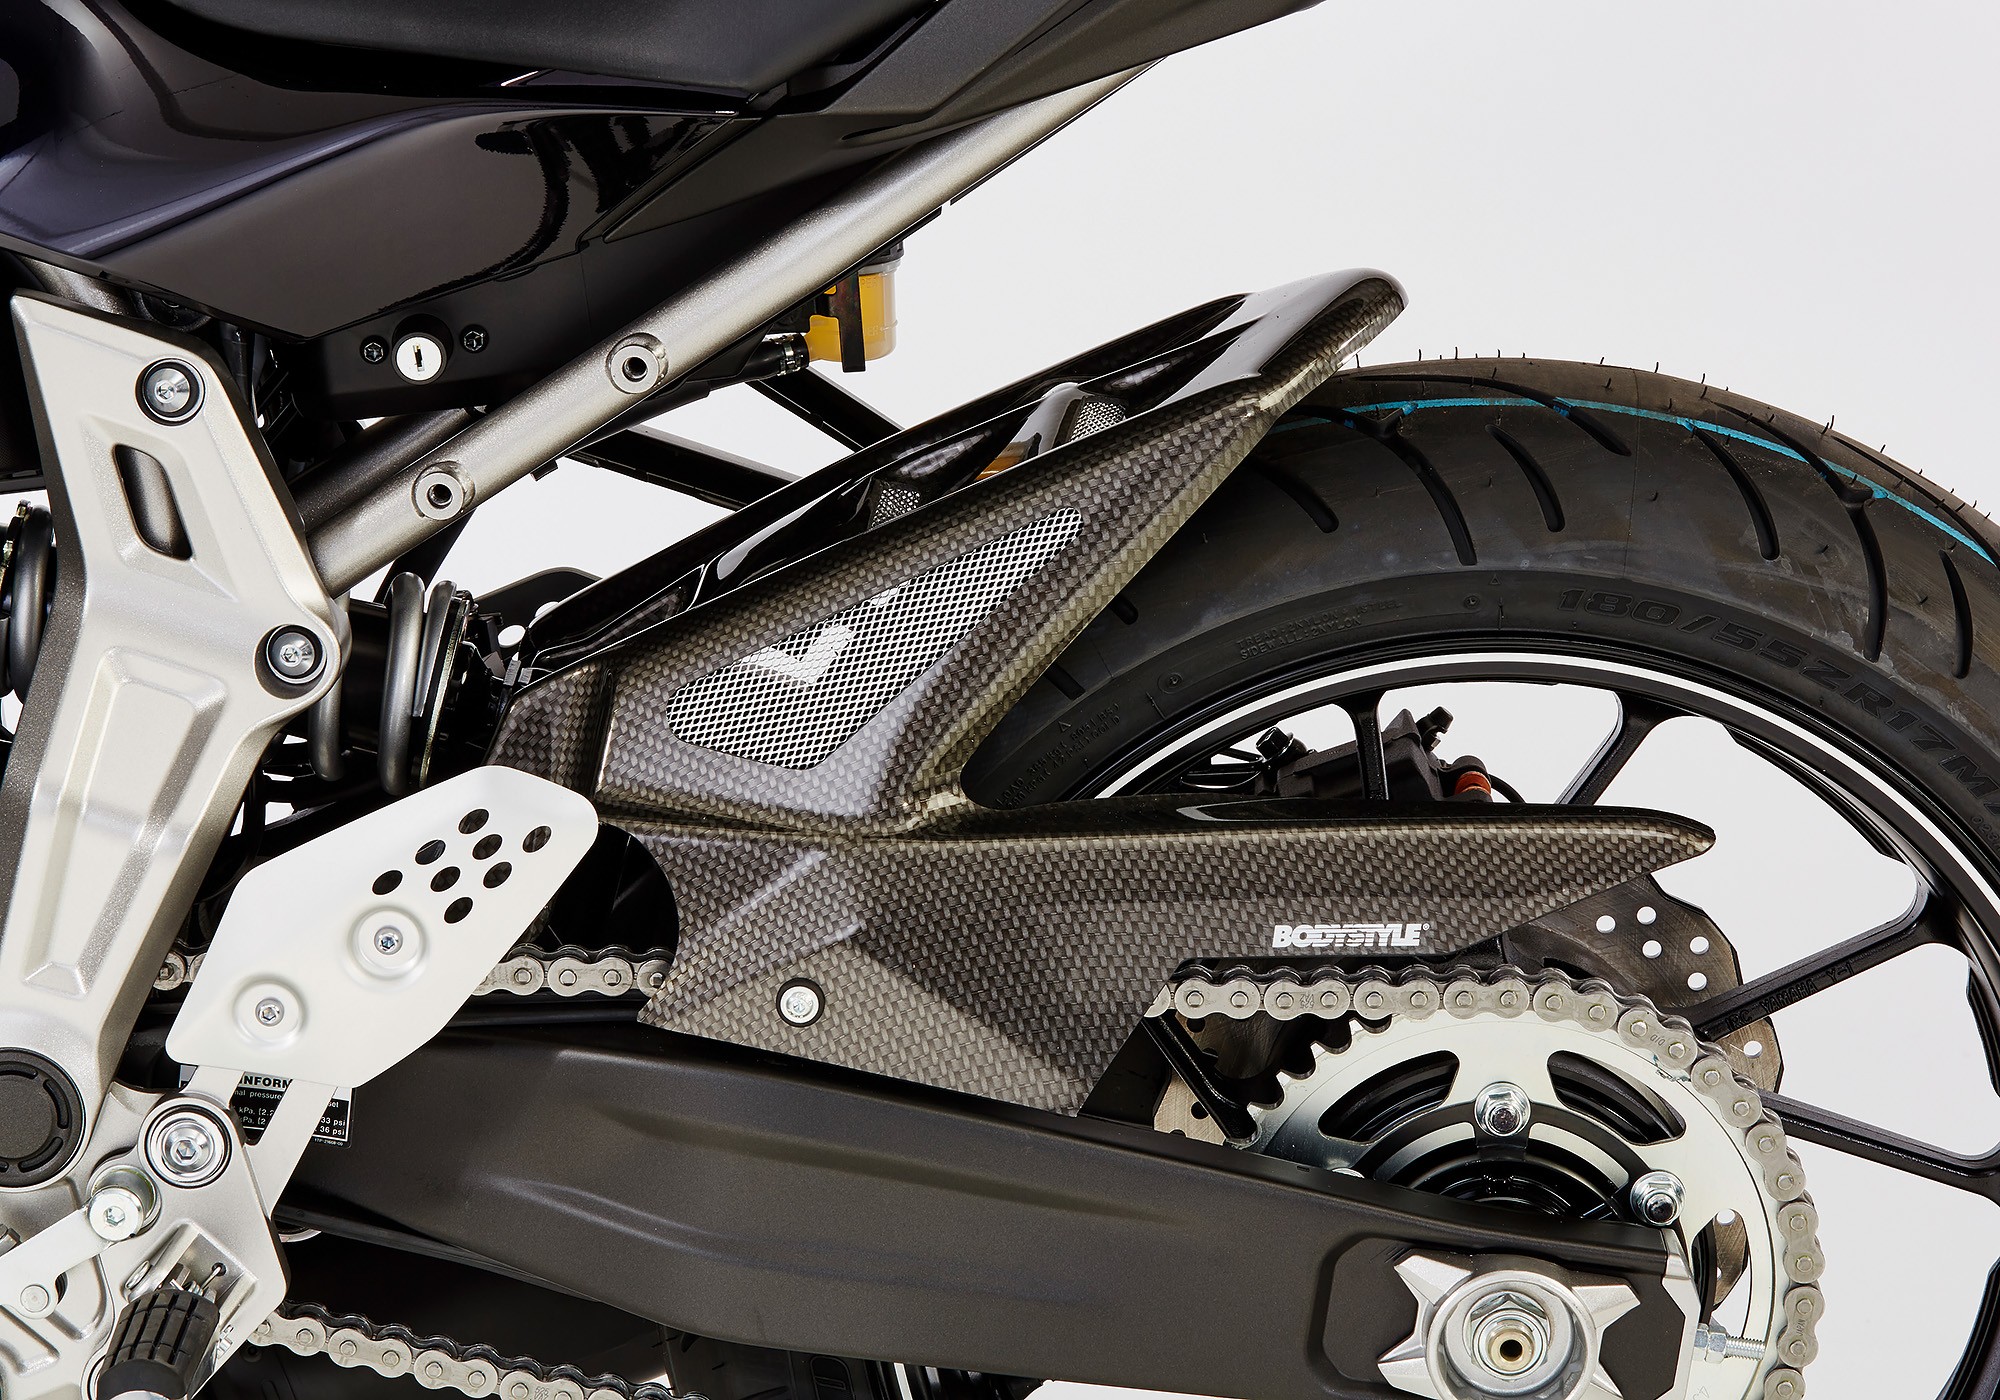 BODYSTYLE Raceline Hinterradabdeckung Carbon Look ABE passt für Yamaha MT-07, MT-07 Motocage, XSR700